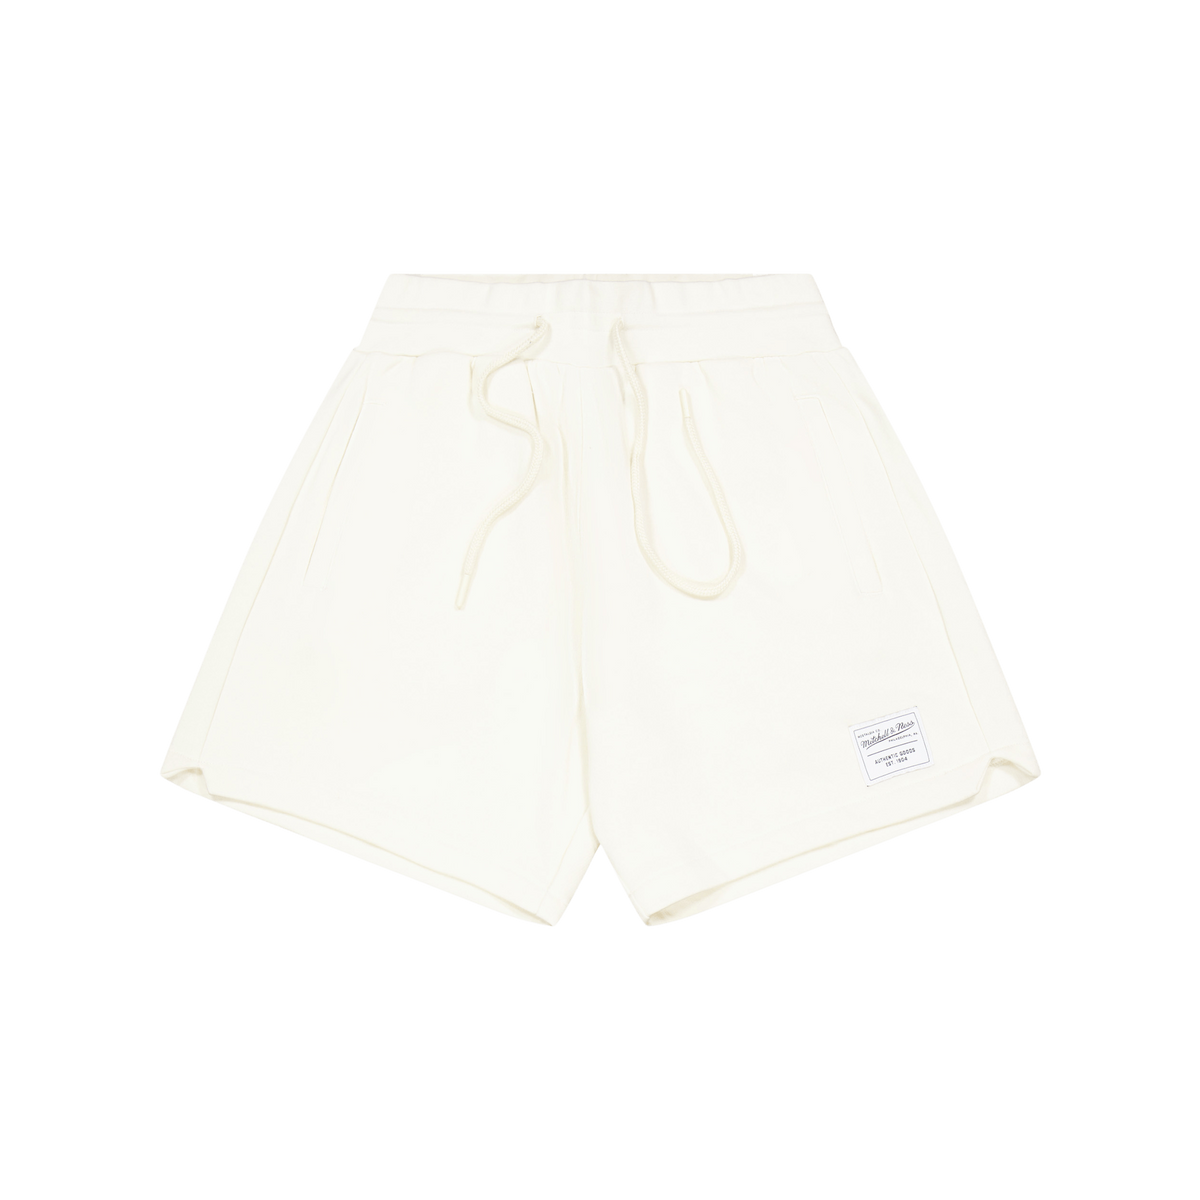 M&n Essentials Shorts Pattern/off White